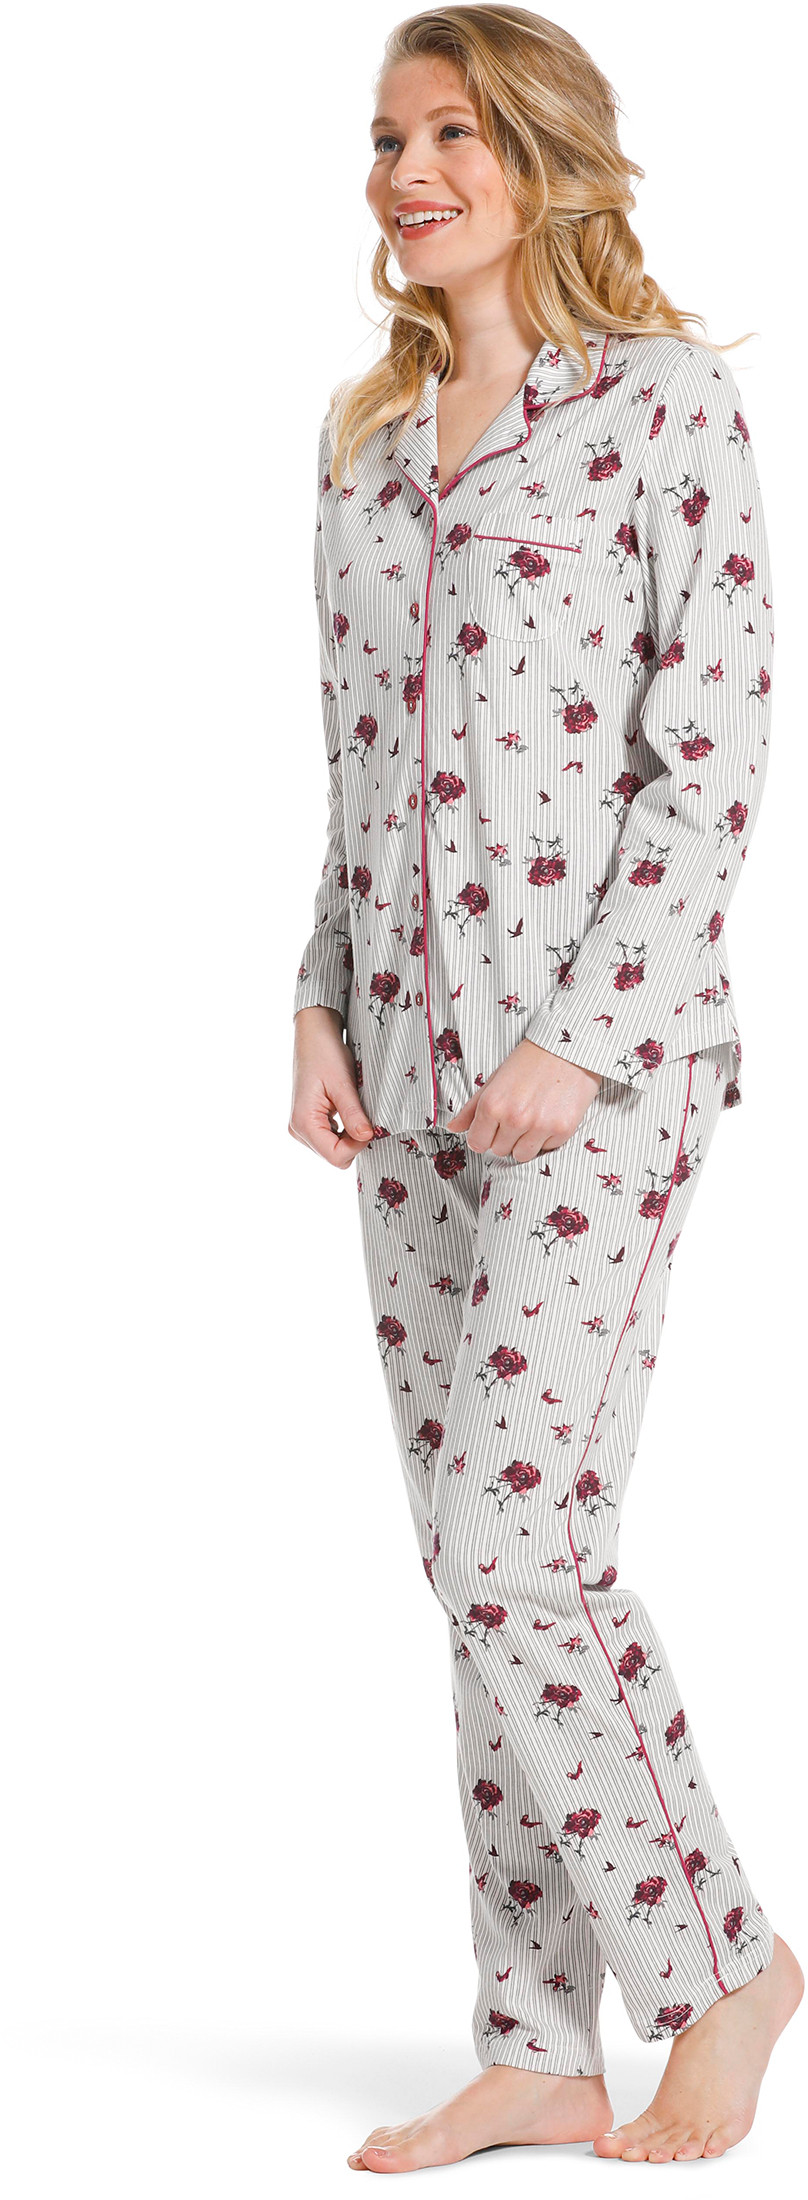 Pastunette doorknoop dames pyjama 20222-156-6-46